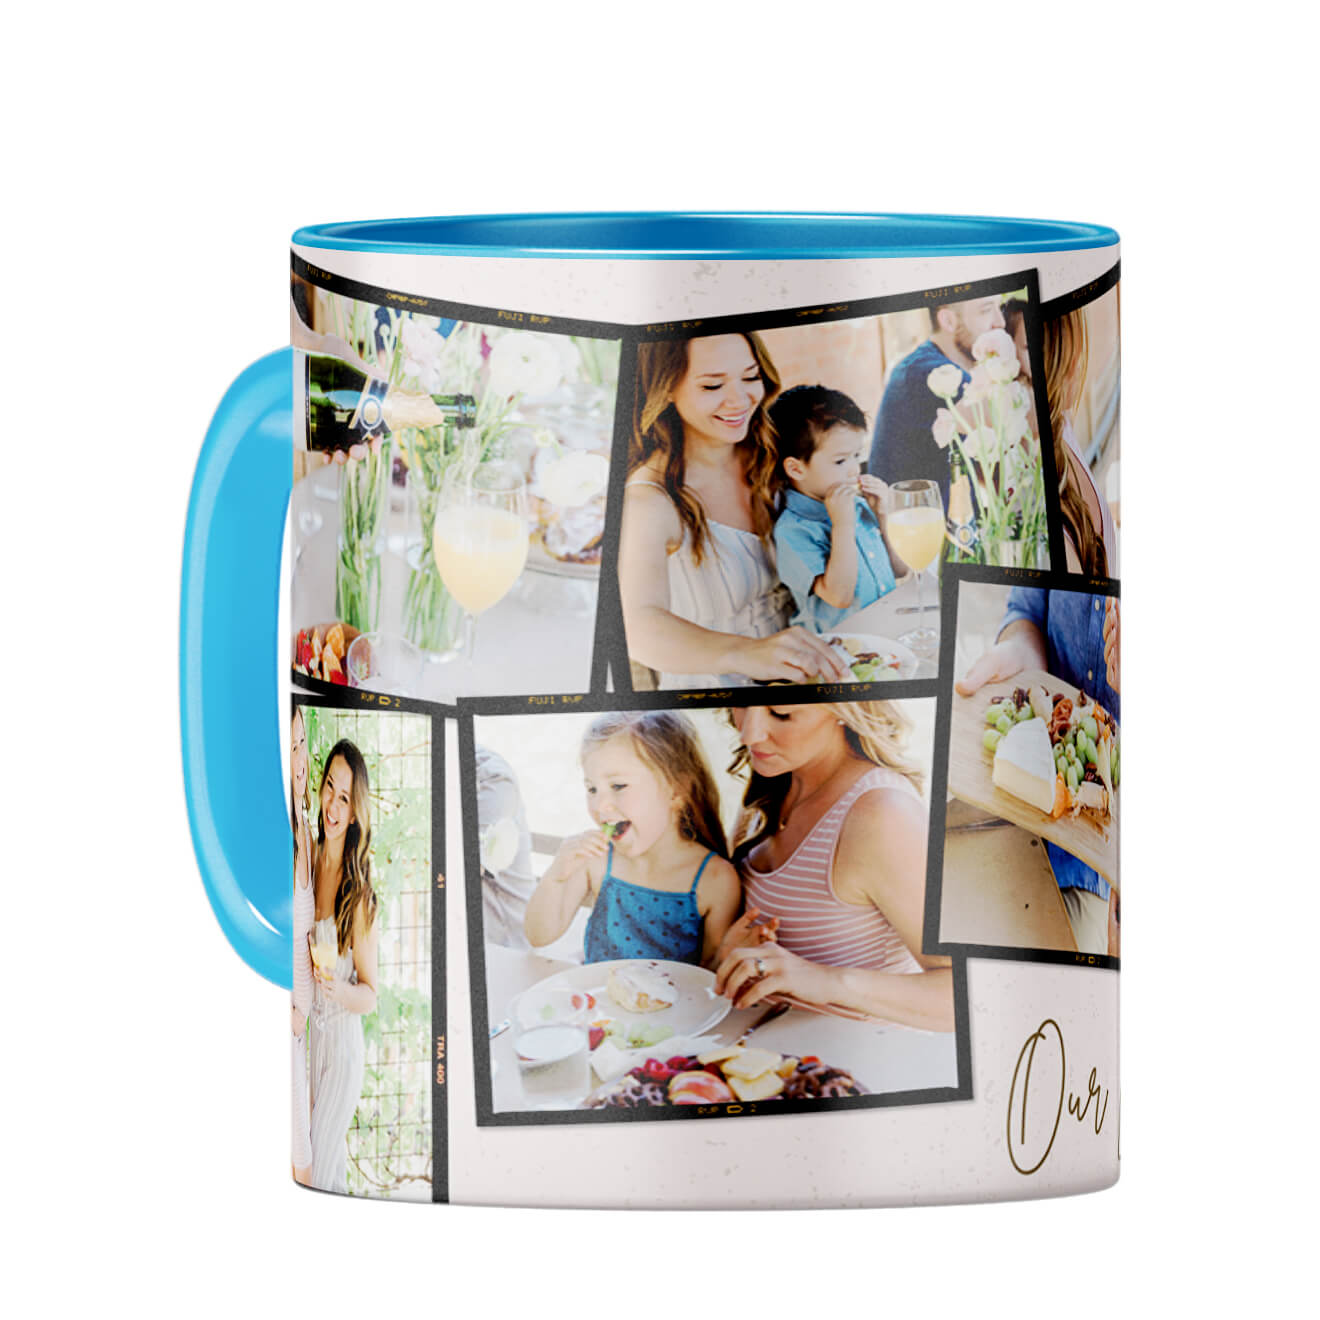 Our Loving Memories Coffee Mug